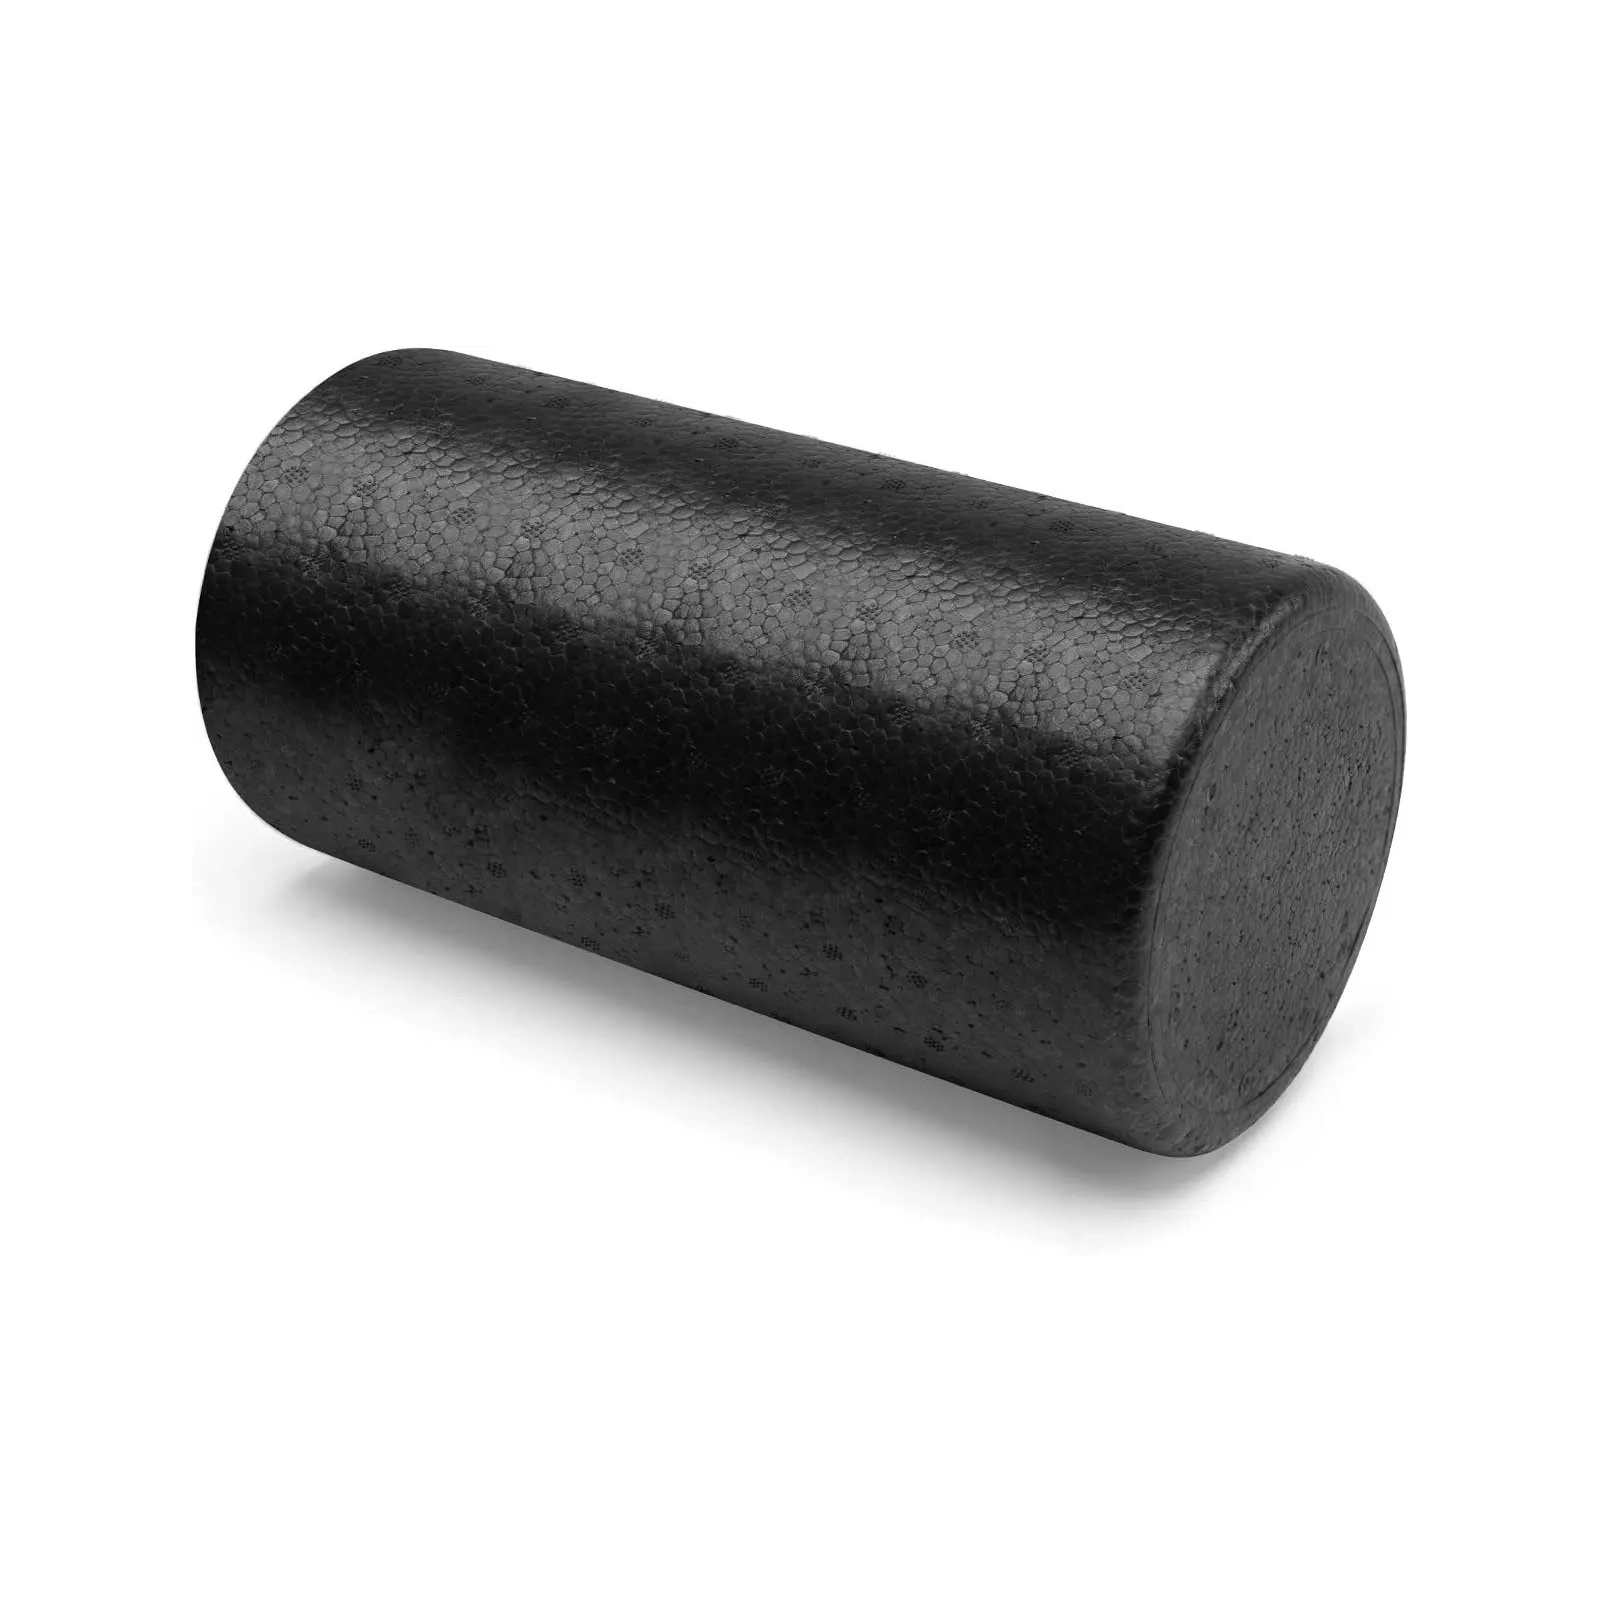 Масажный ролик U-Powex гладкий UP_1008 EPP foam roller 90х15cm (UP_1008_epp_(90cm))